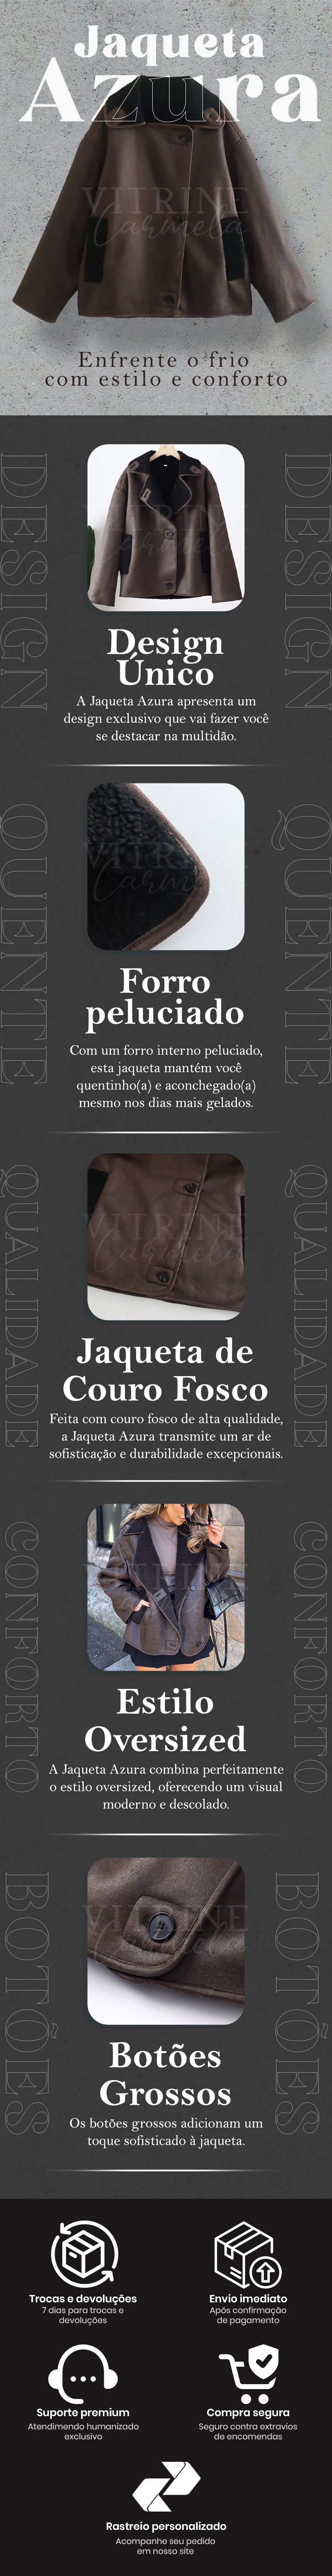 jaqueta-de-couro-feminina-casaco-inverno-em-promocao-com-frete-gratis-vitrine-carmela-Jaqueta-Azura